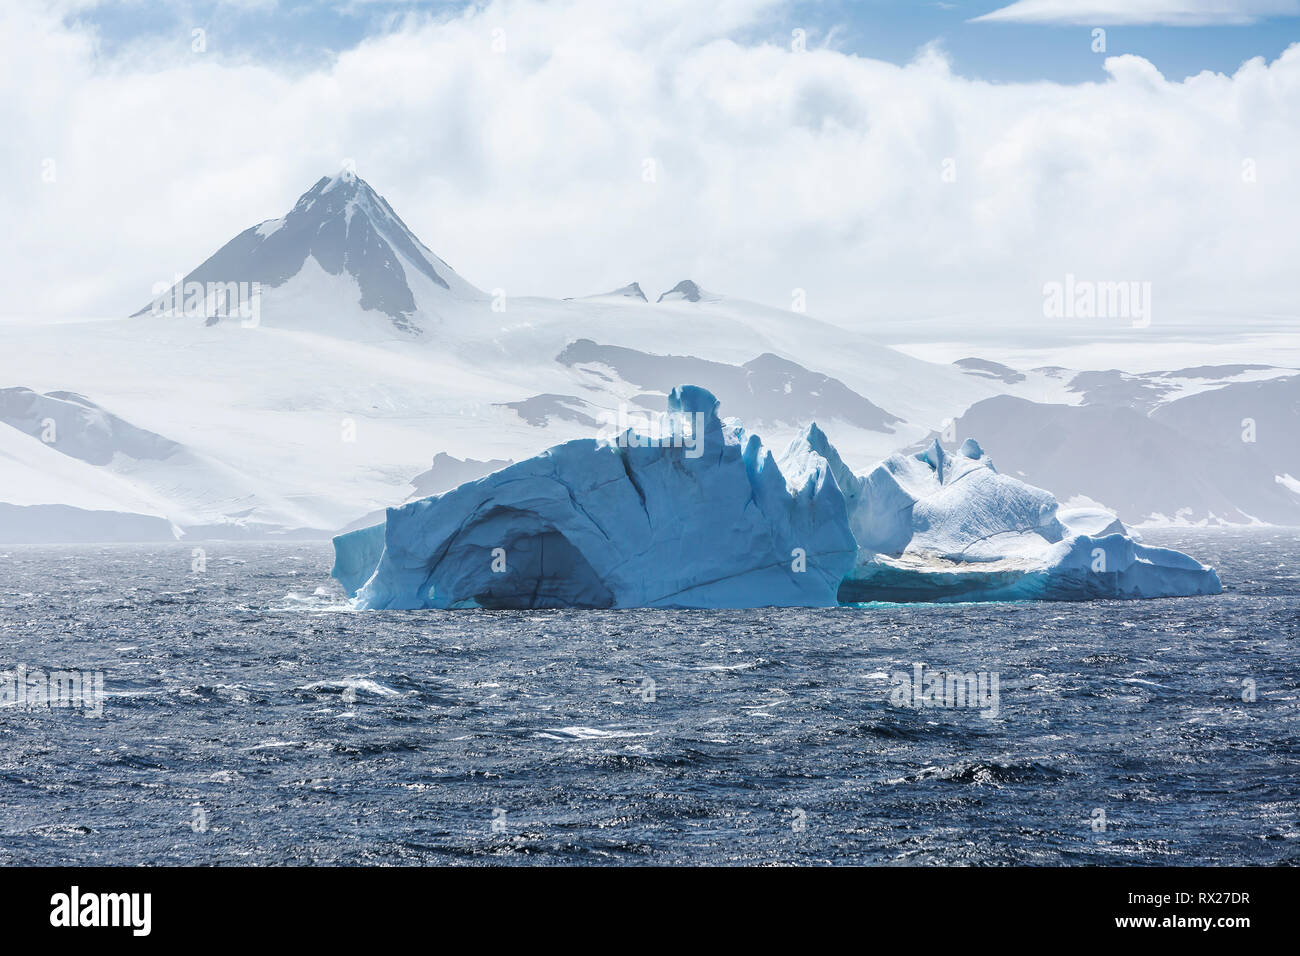 Un pinnacolo roccioso si erge alto dietro un iceberg che galleggia nello stretto di Bransfield all'interno della penisola antartica, dello stretto di Bransfield, della penisola antartica e dell'Antartide Foto Stock